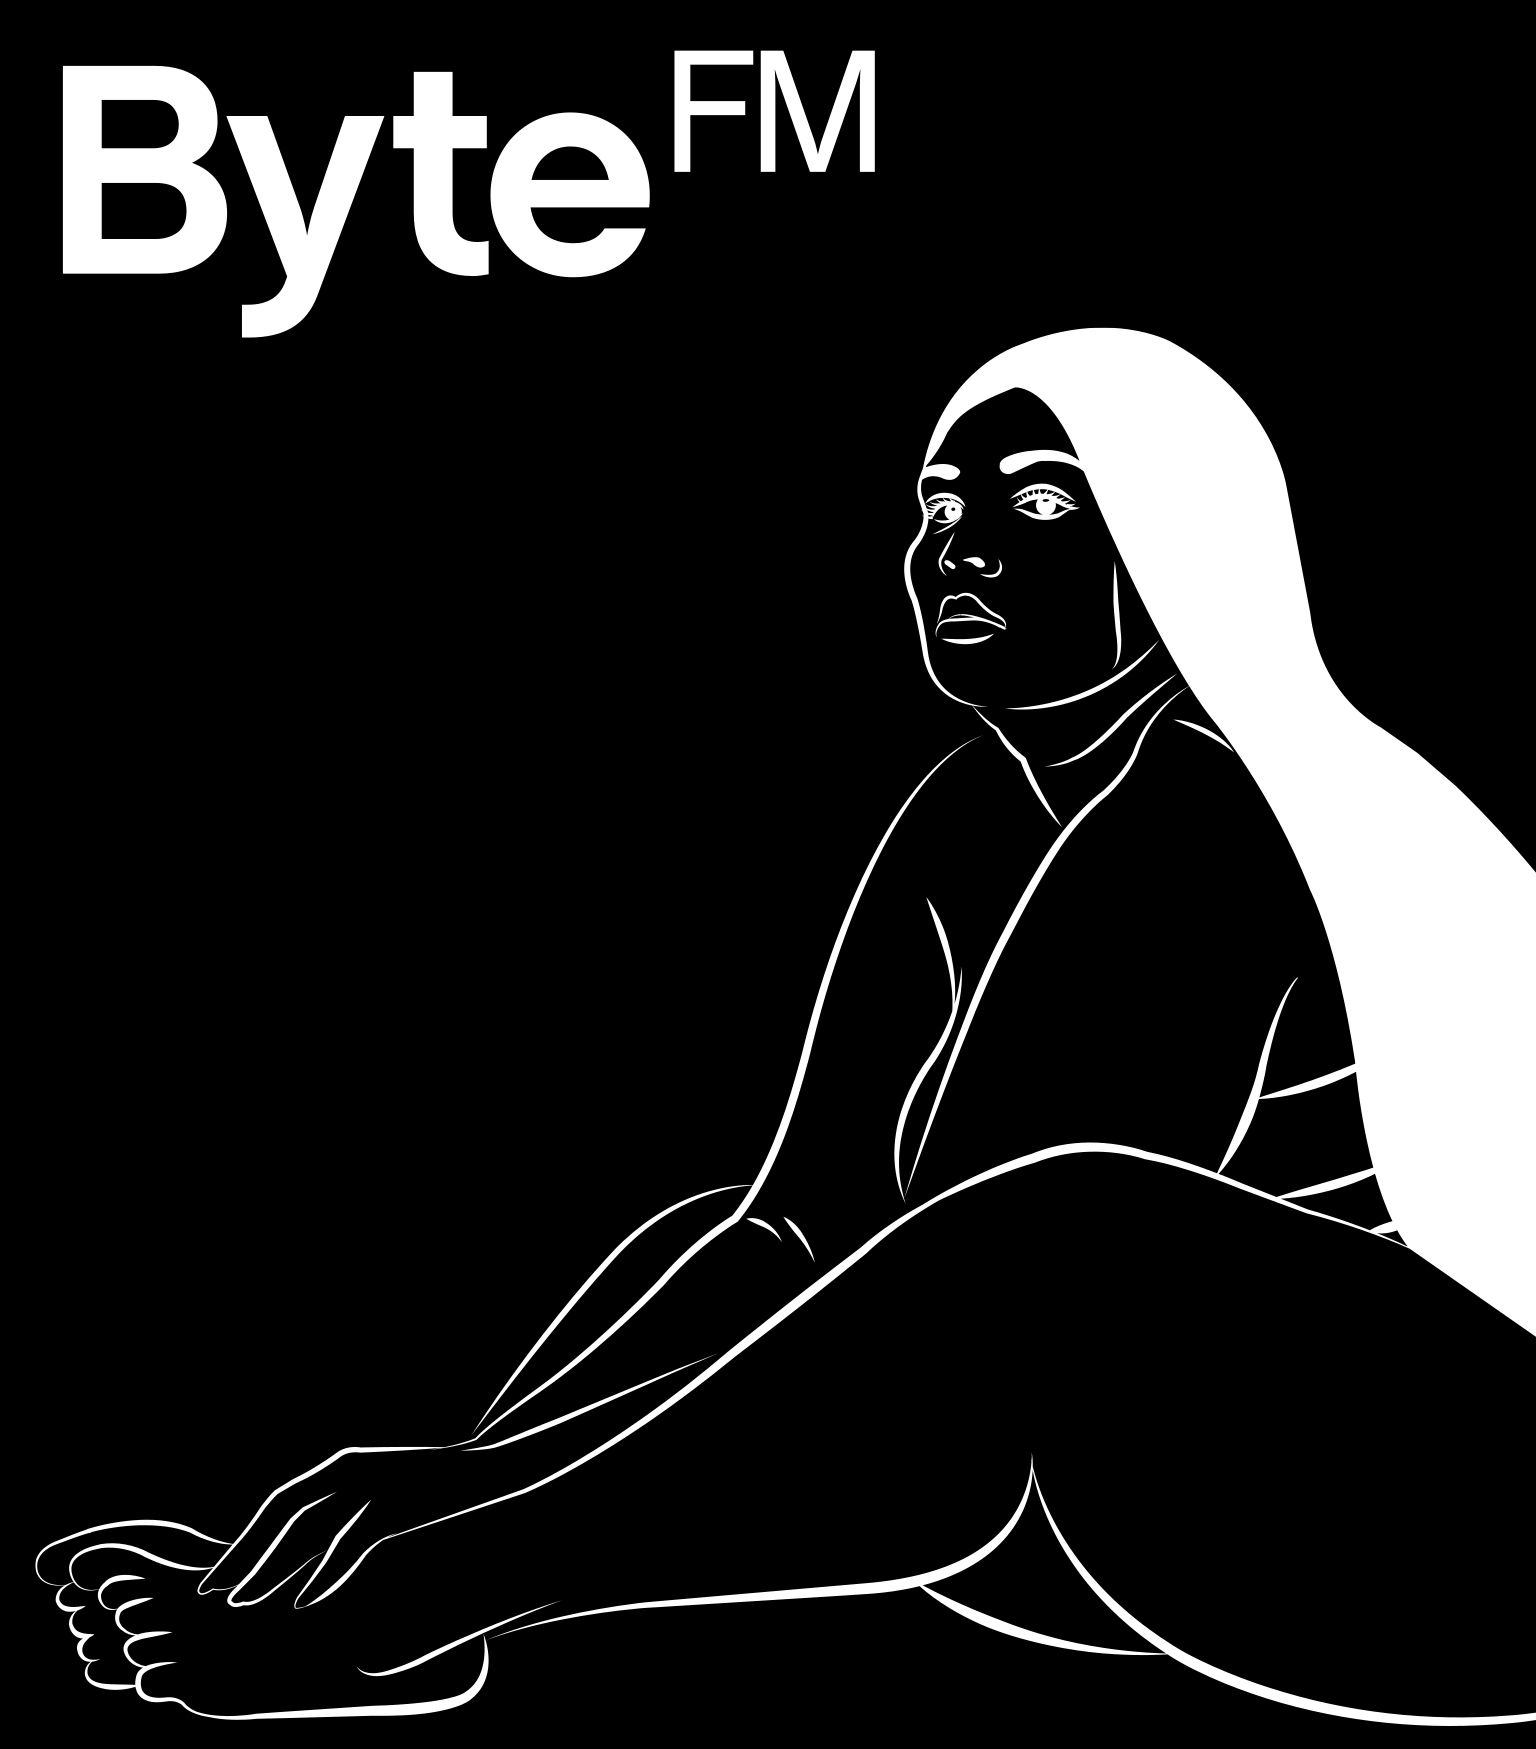 ByteFM / Lizzo